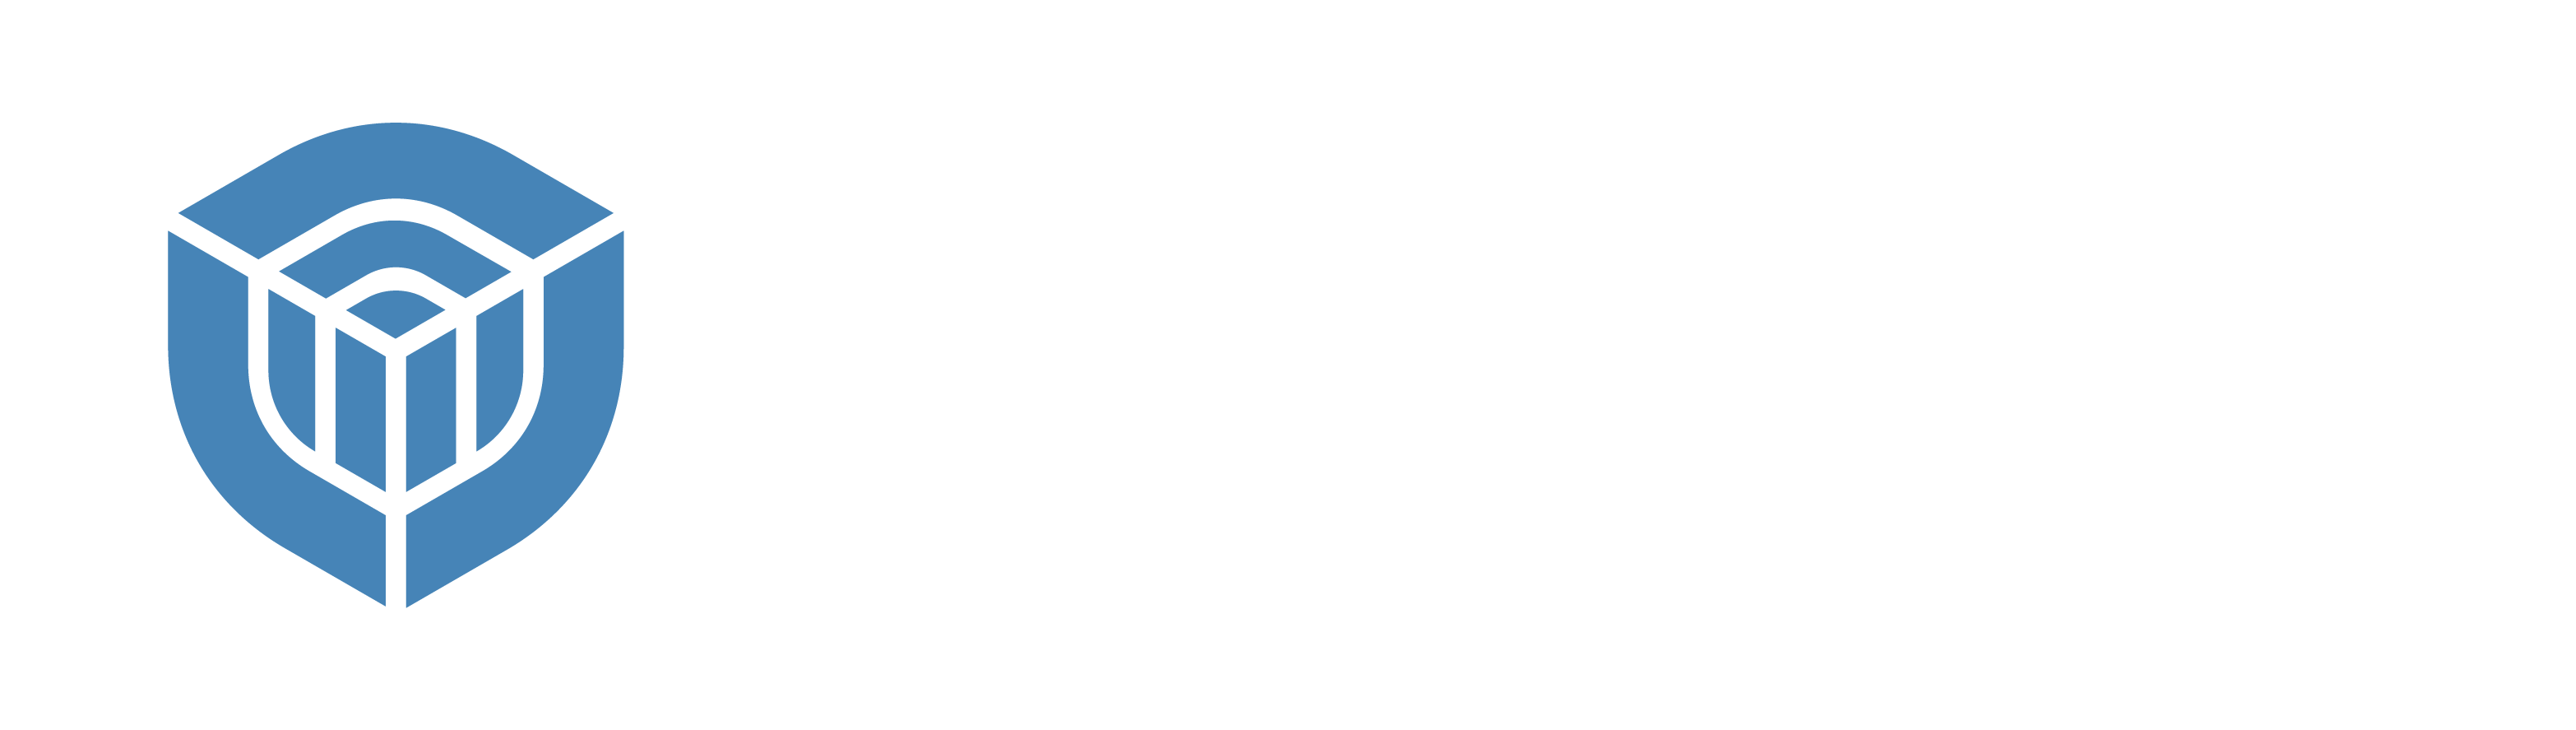 Integresolv Systems LLC